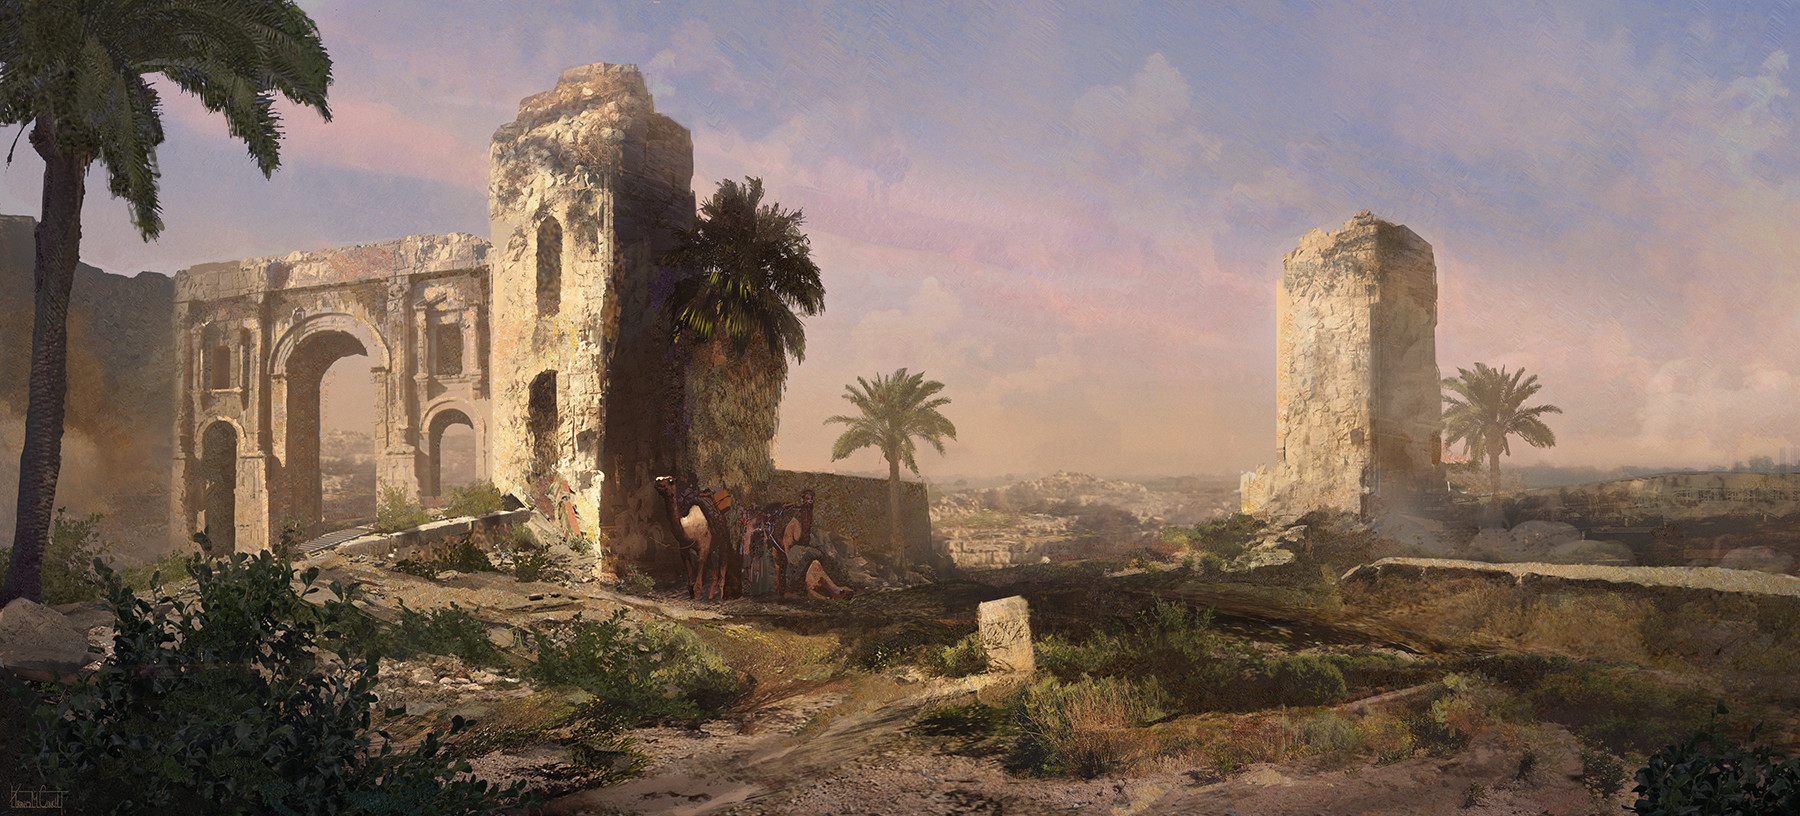 General 1800x816 artwork digital art desert camels ruins landscape